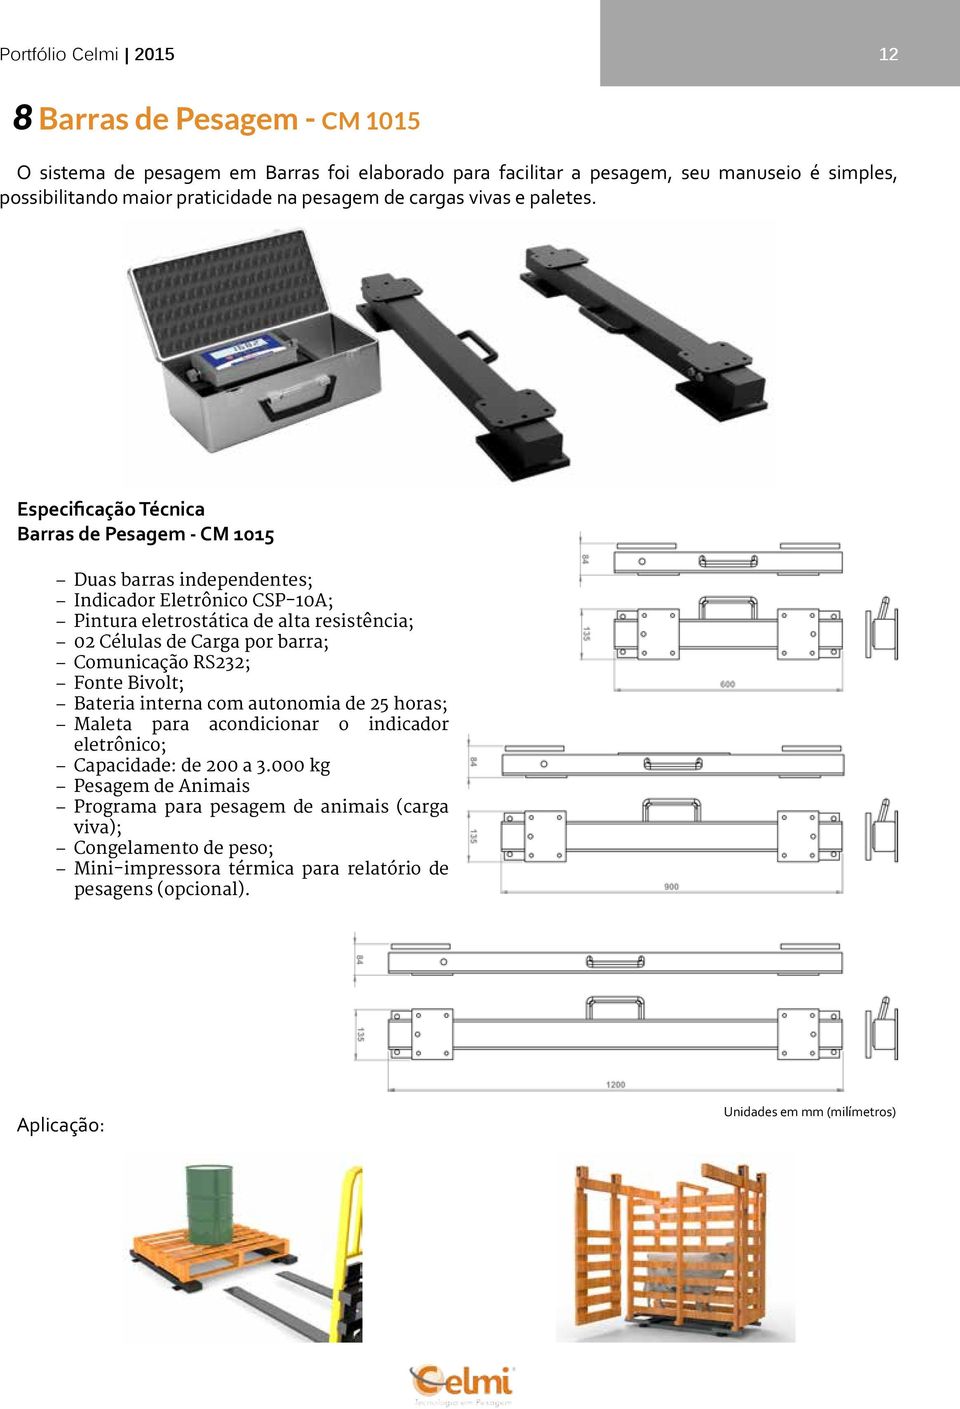 Barras de Pesagem - CM 1015 Duas barras independentes; Indicador Eletrônico CSP-10A; Pintura eletrostática de alta resistência; 02 Células de Carga por barra; Comunicação